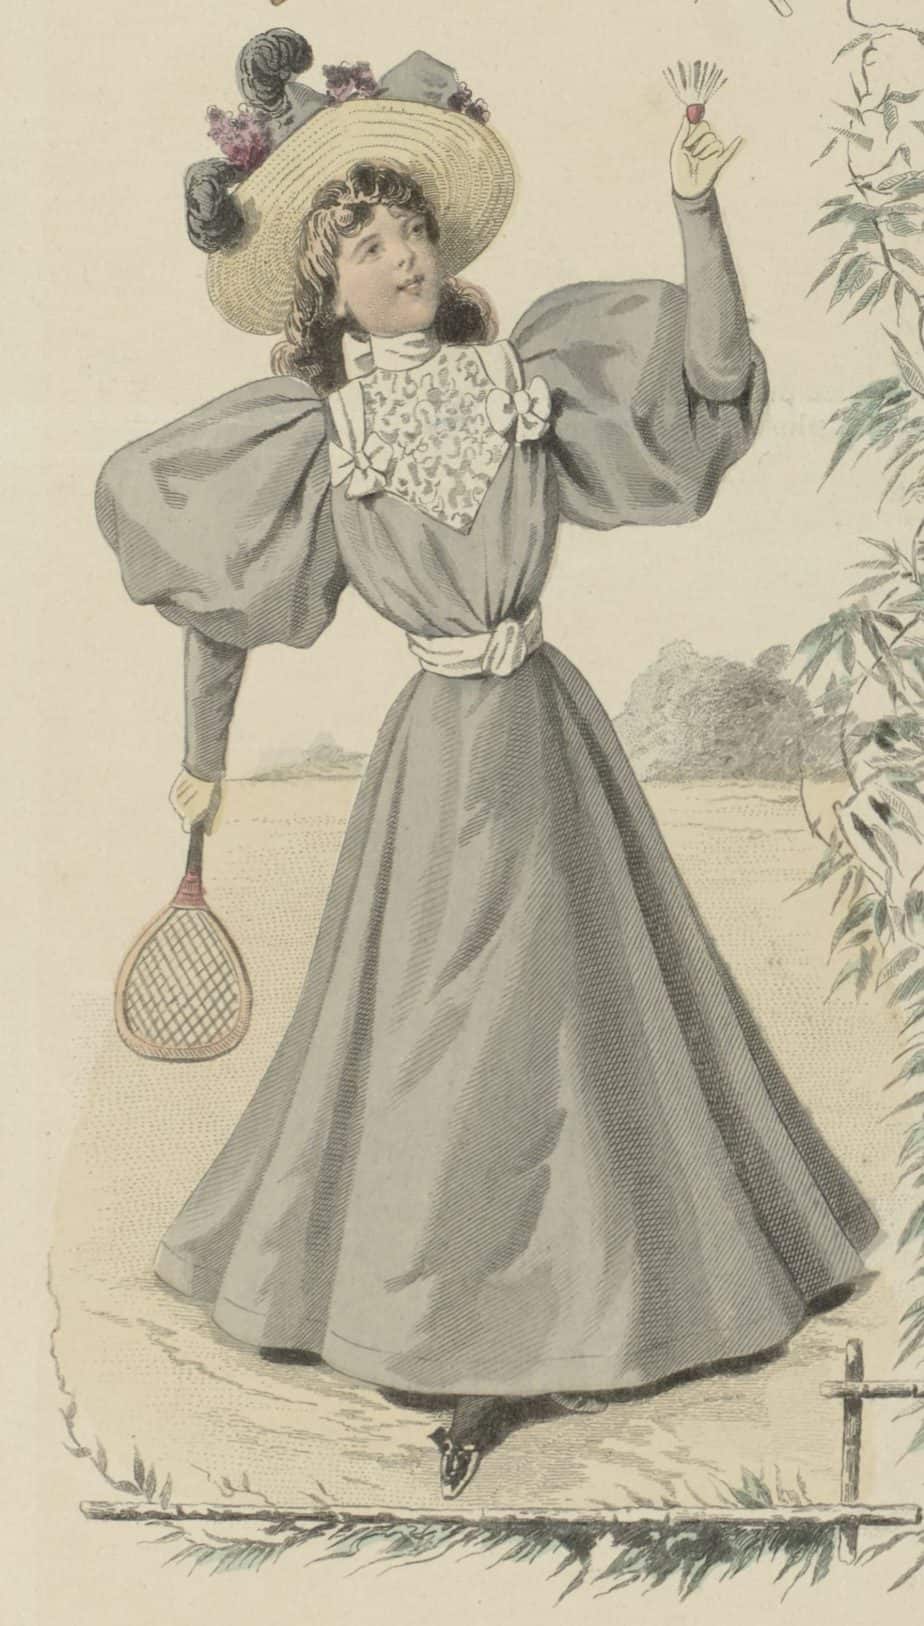 Le Moniteur de la Mode, 1895, Nr. 3128e, No. 17 Garnitures et Passementeries (...), Guido Gonin, 1895 tennis